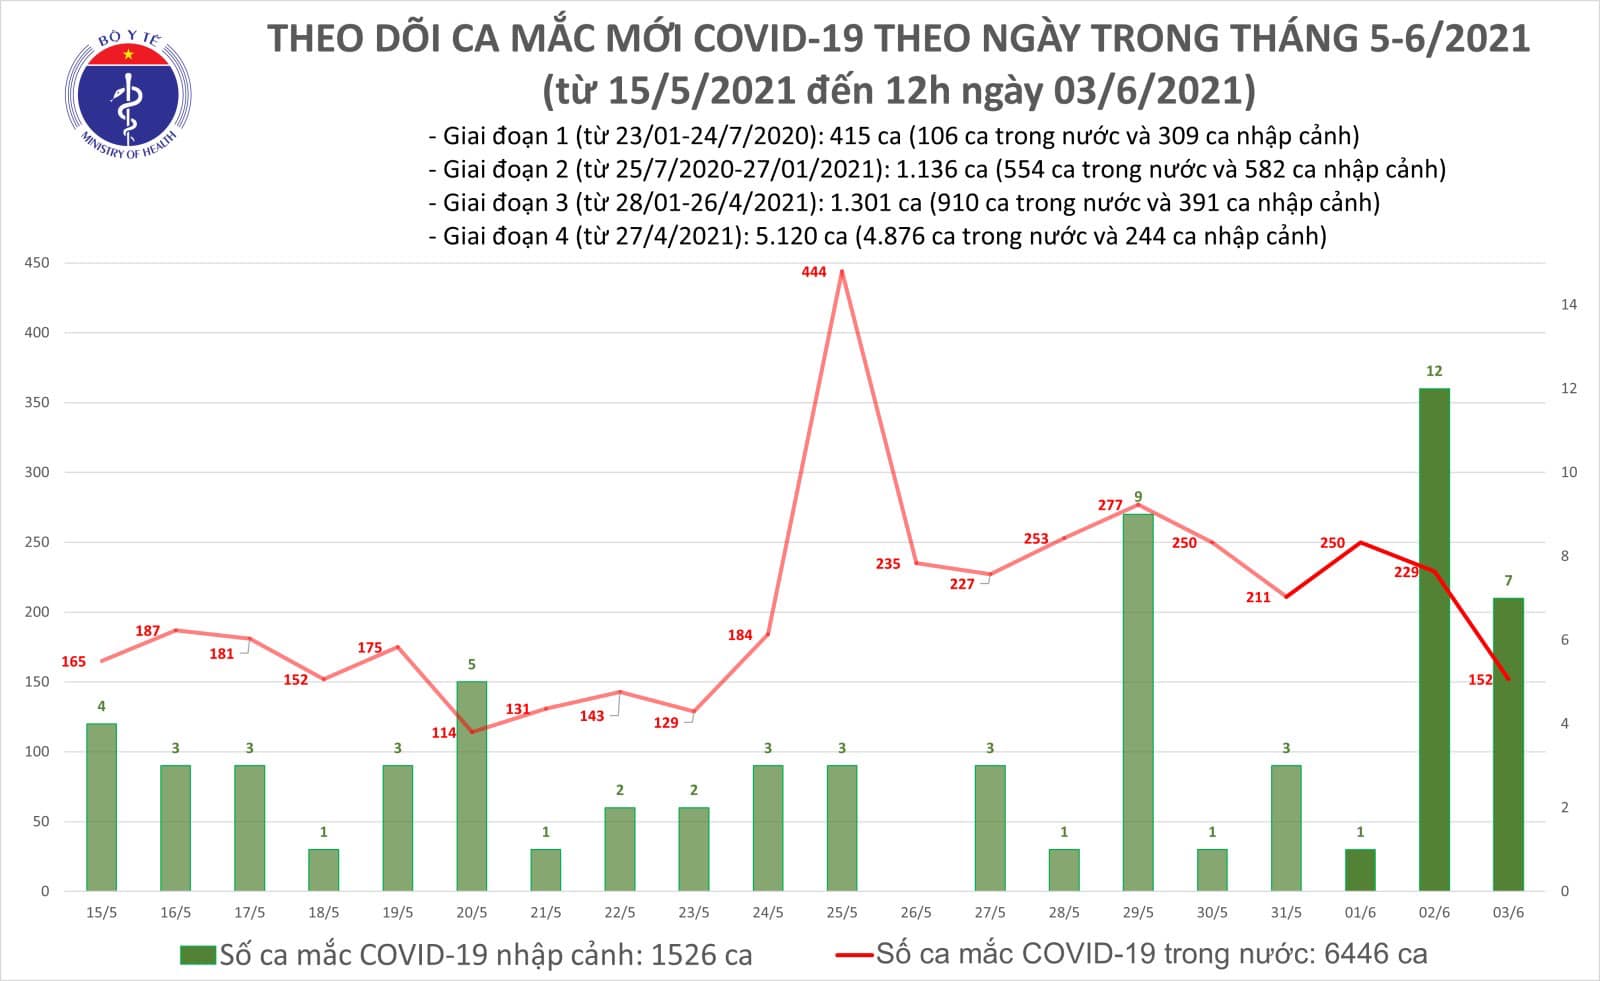 Trưa 3/6: Thêm 96 ca mắc COVID-19 trong nước tại 5 địa phương